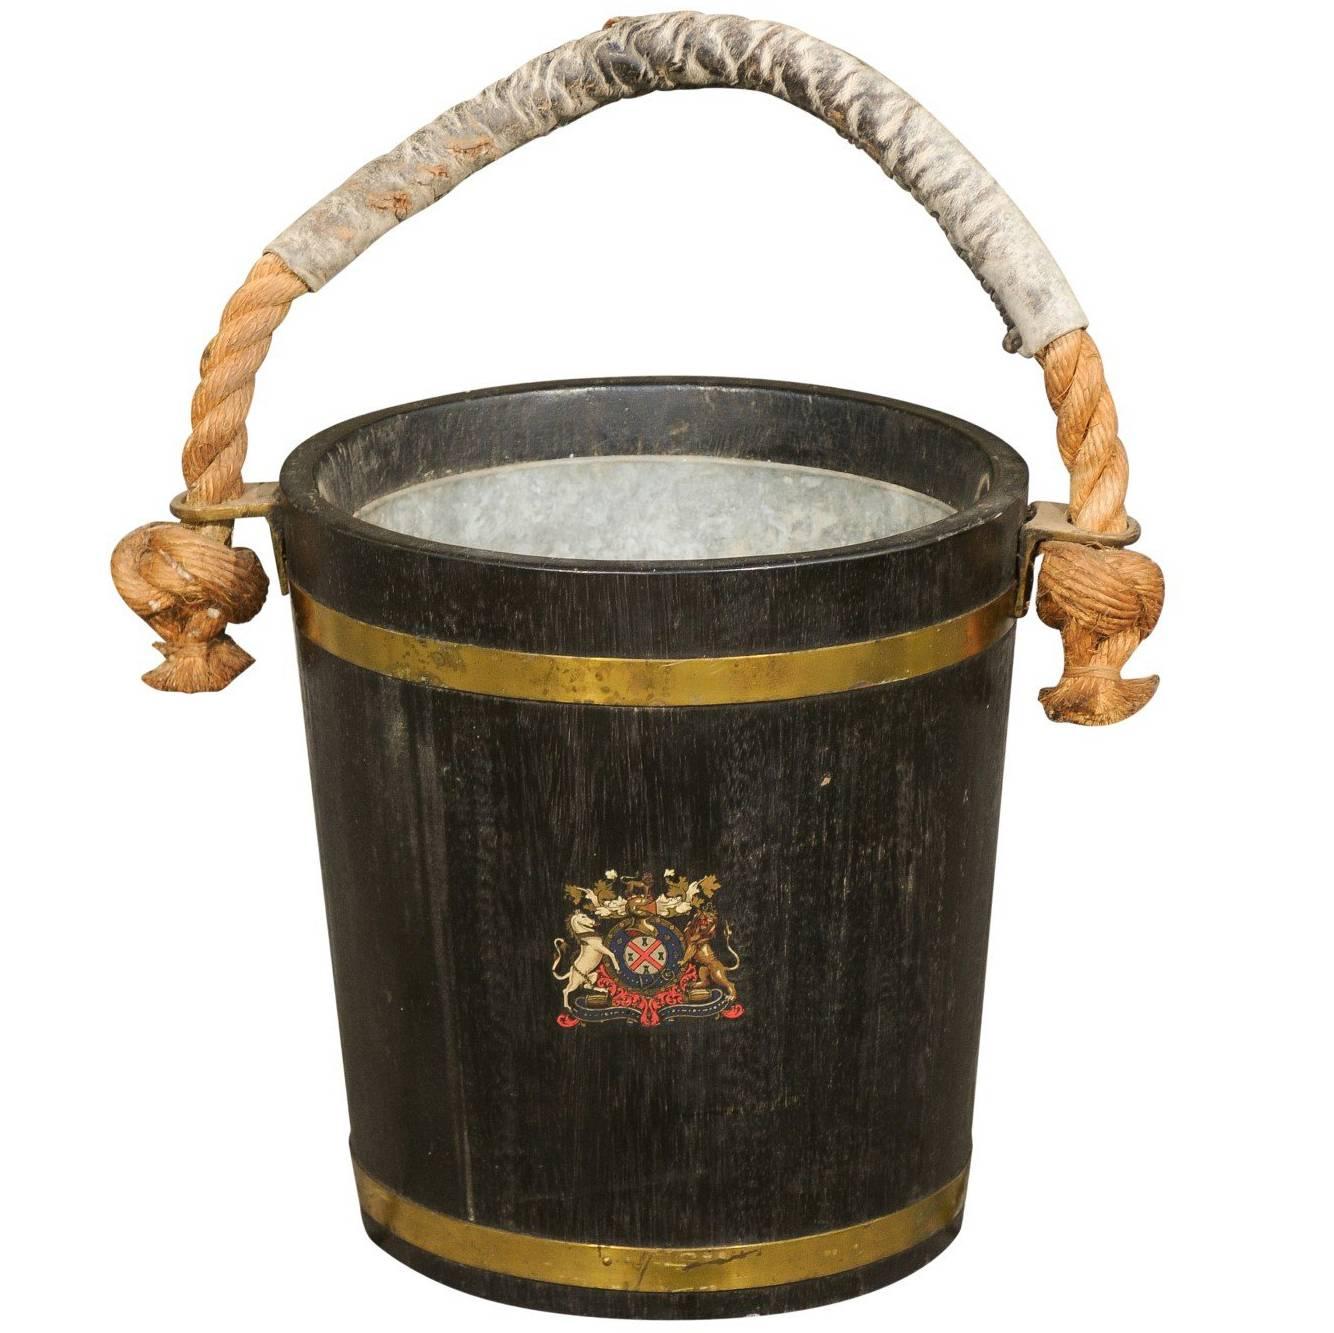 Champaign Bucket aus englischer Eiche mit Wappen aus dem späten 19. Jahrhundert